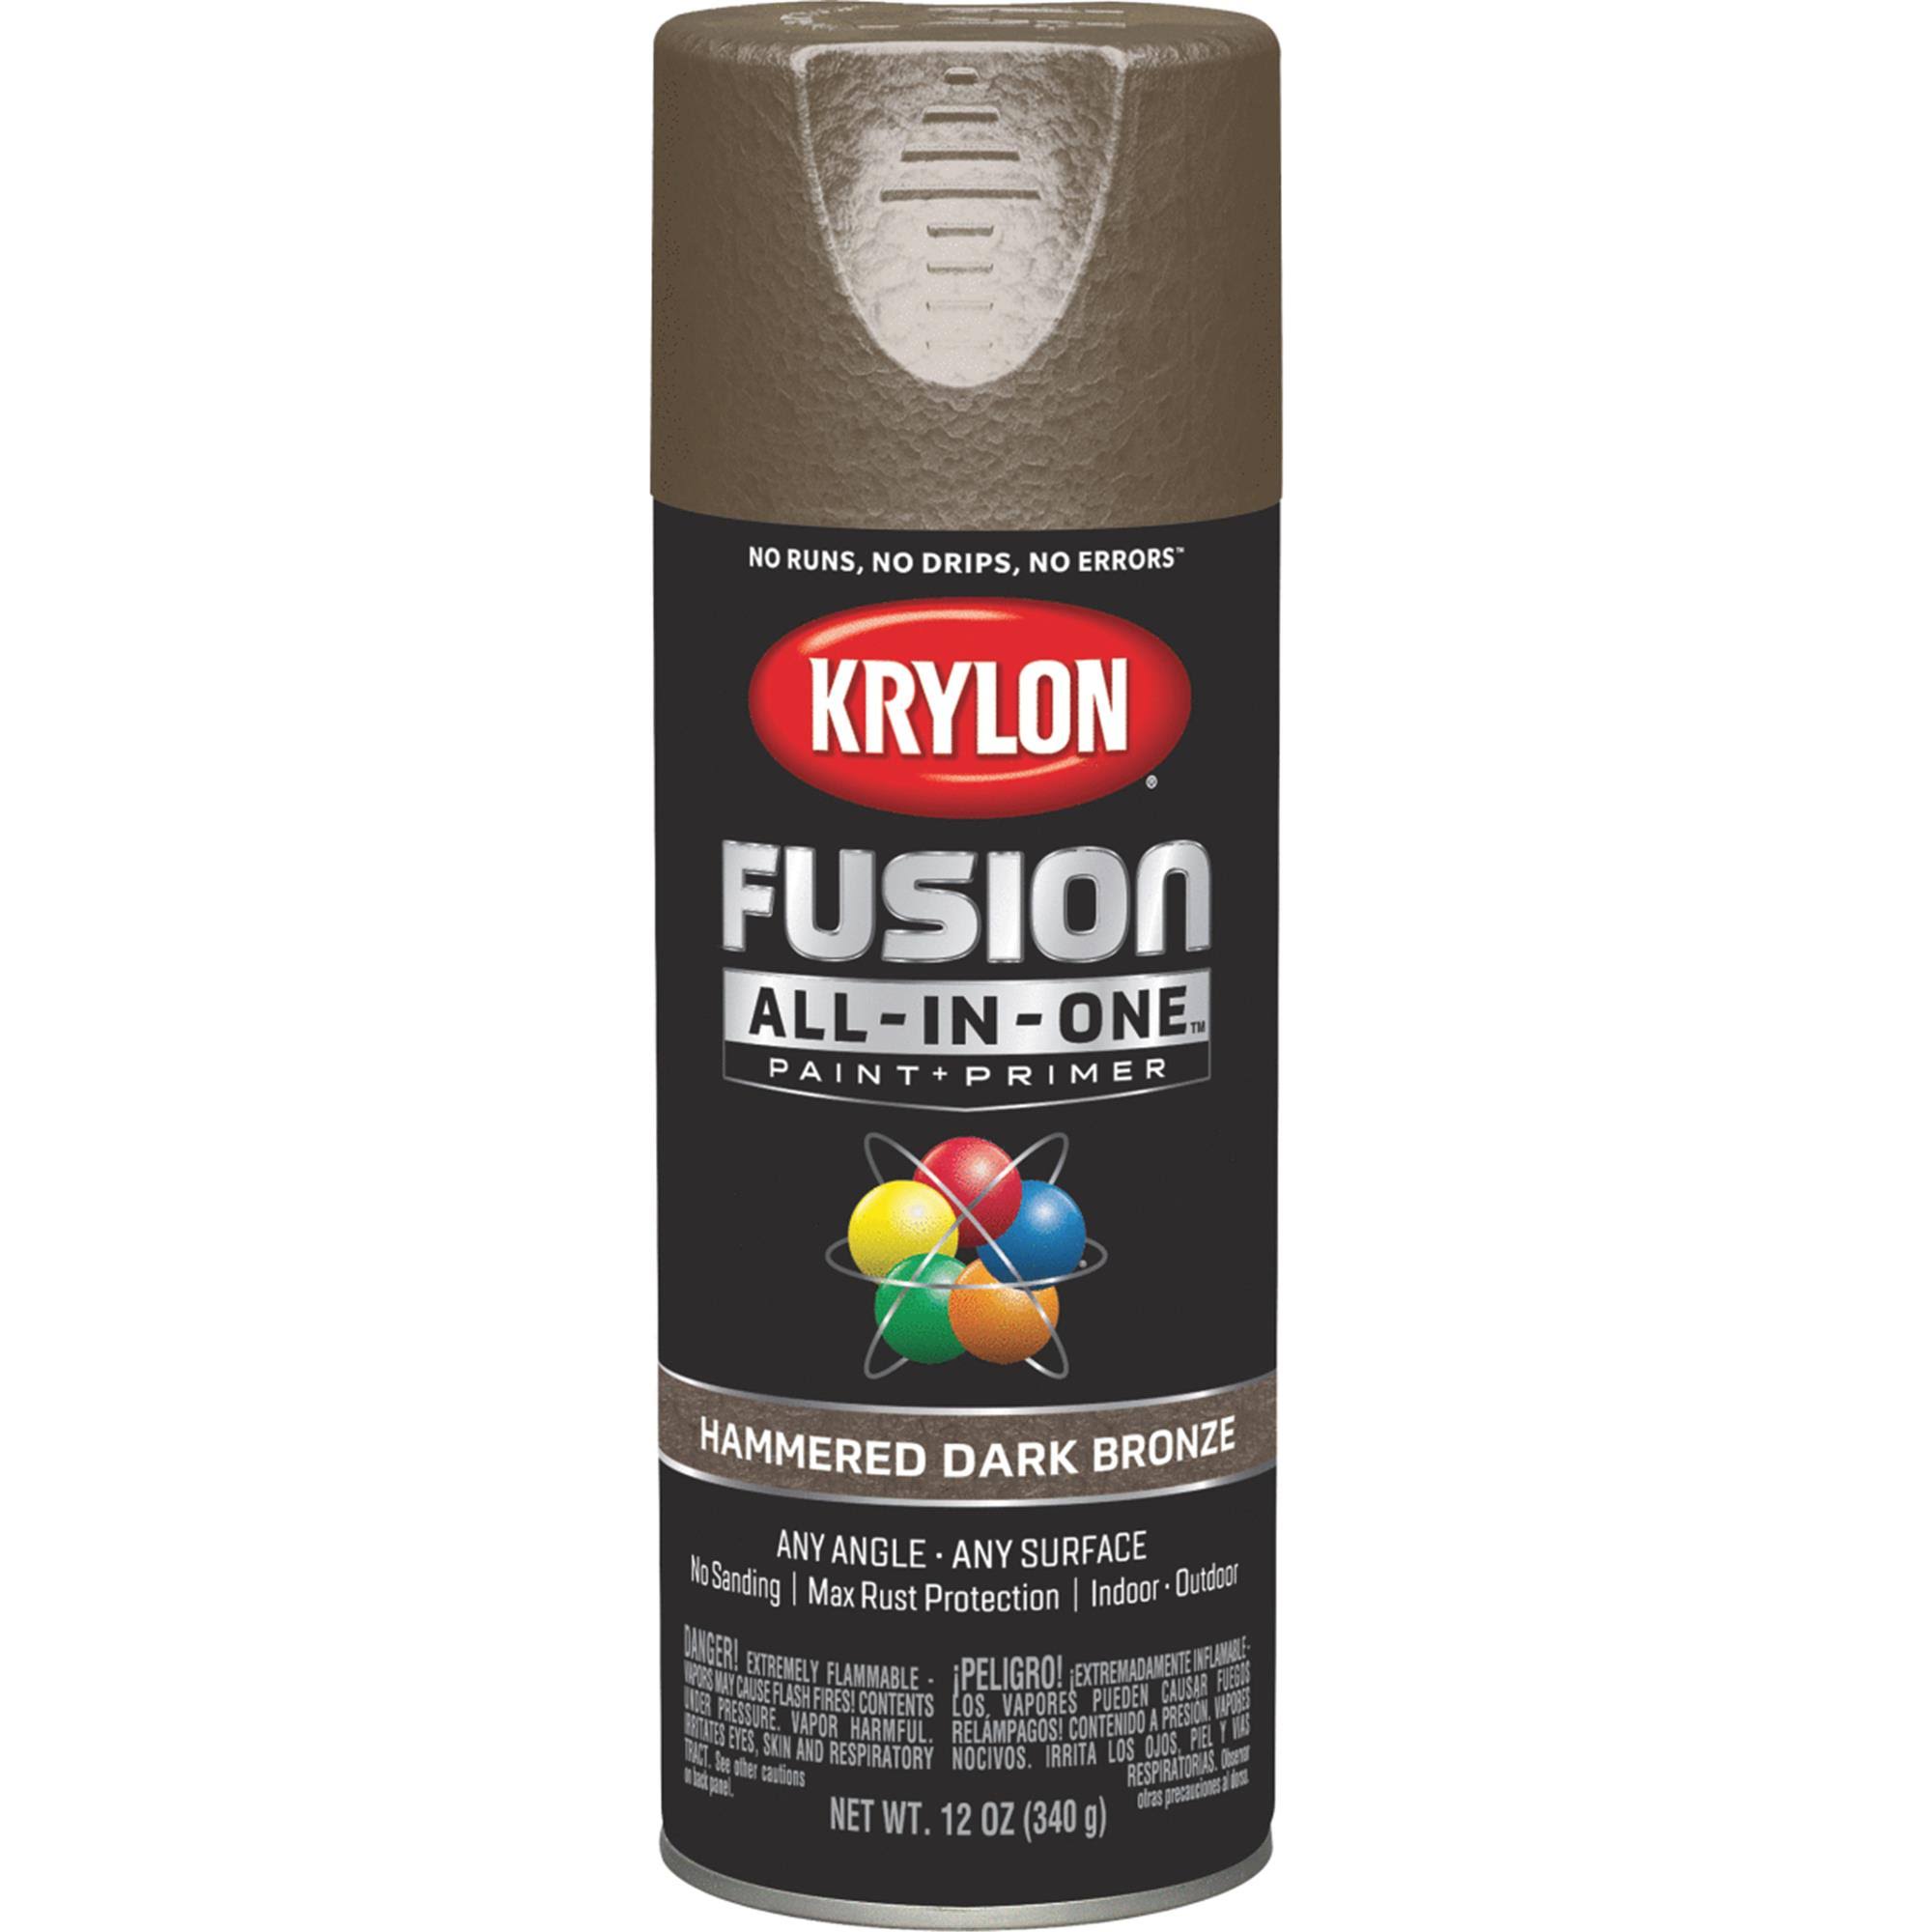 Krylon Hammered Dark Bronze Fusion All-in-One Spray Paint & Primer - 12 oz